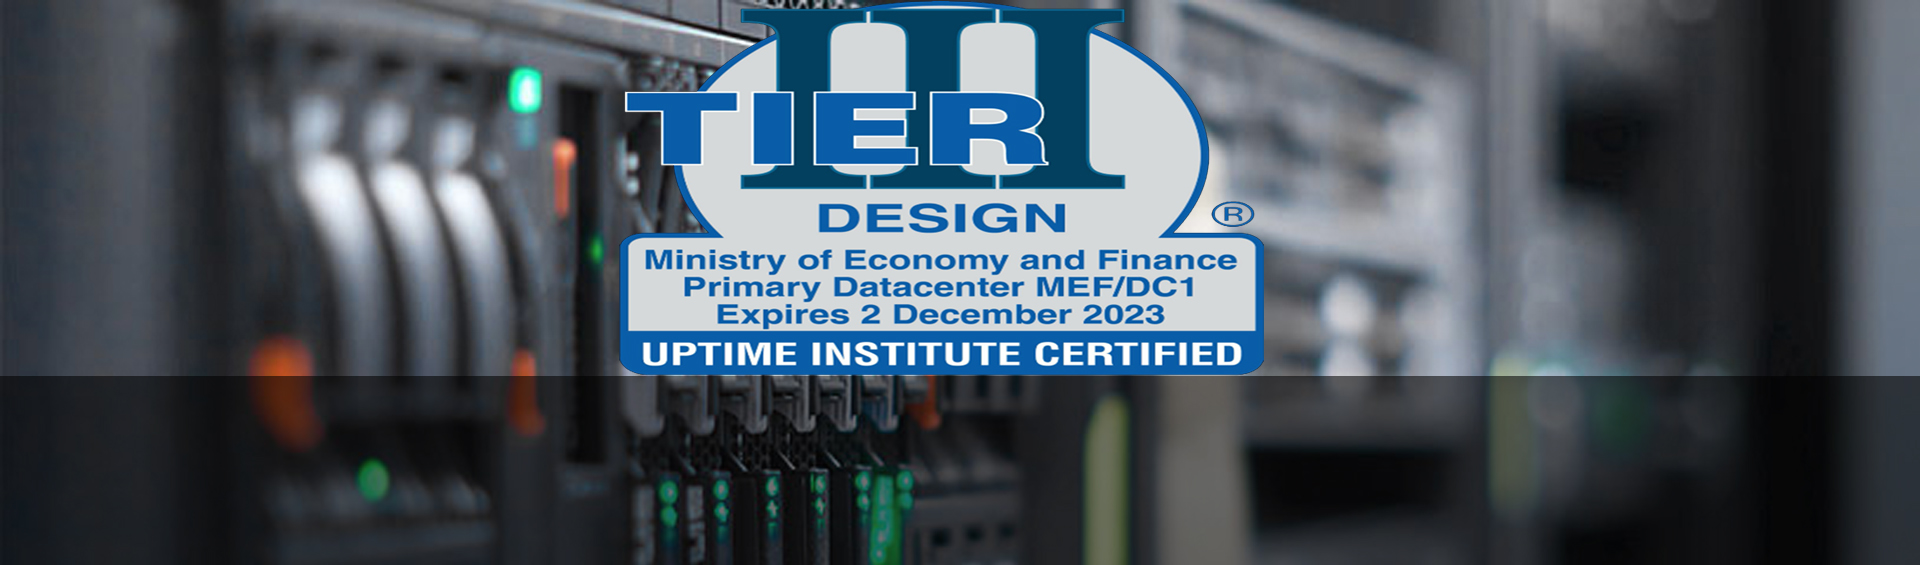 Le Ministère de l’Economie et des Finances obtient la certification TIer III d’Uptime Institute pour son DataCenter